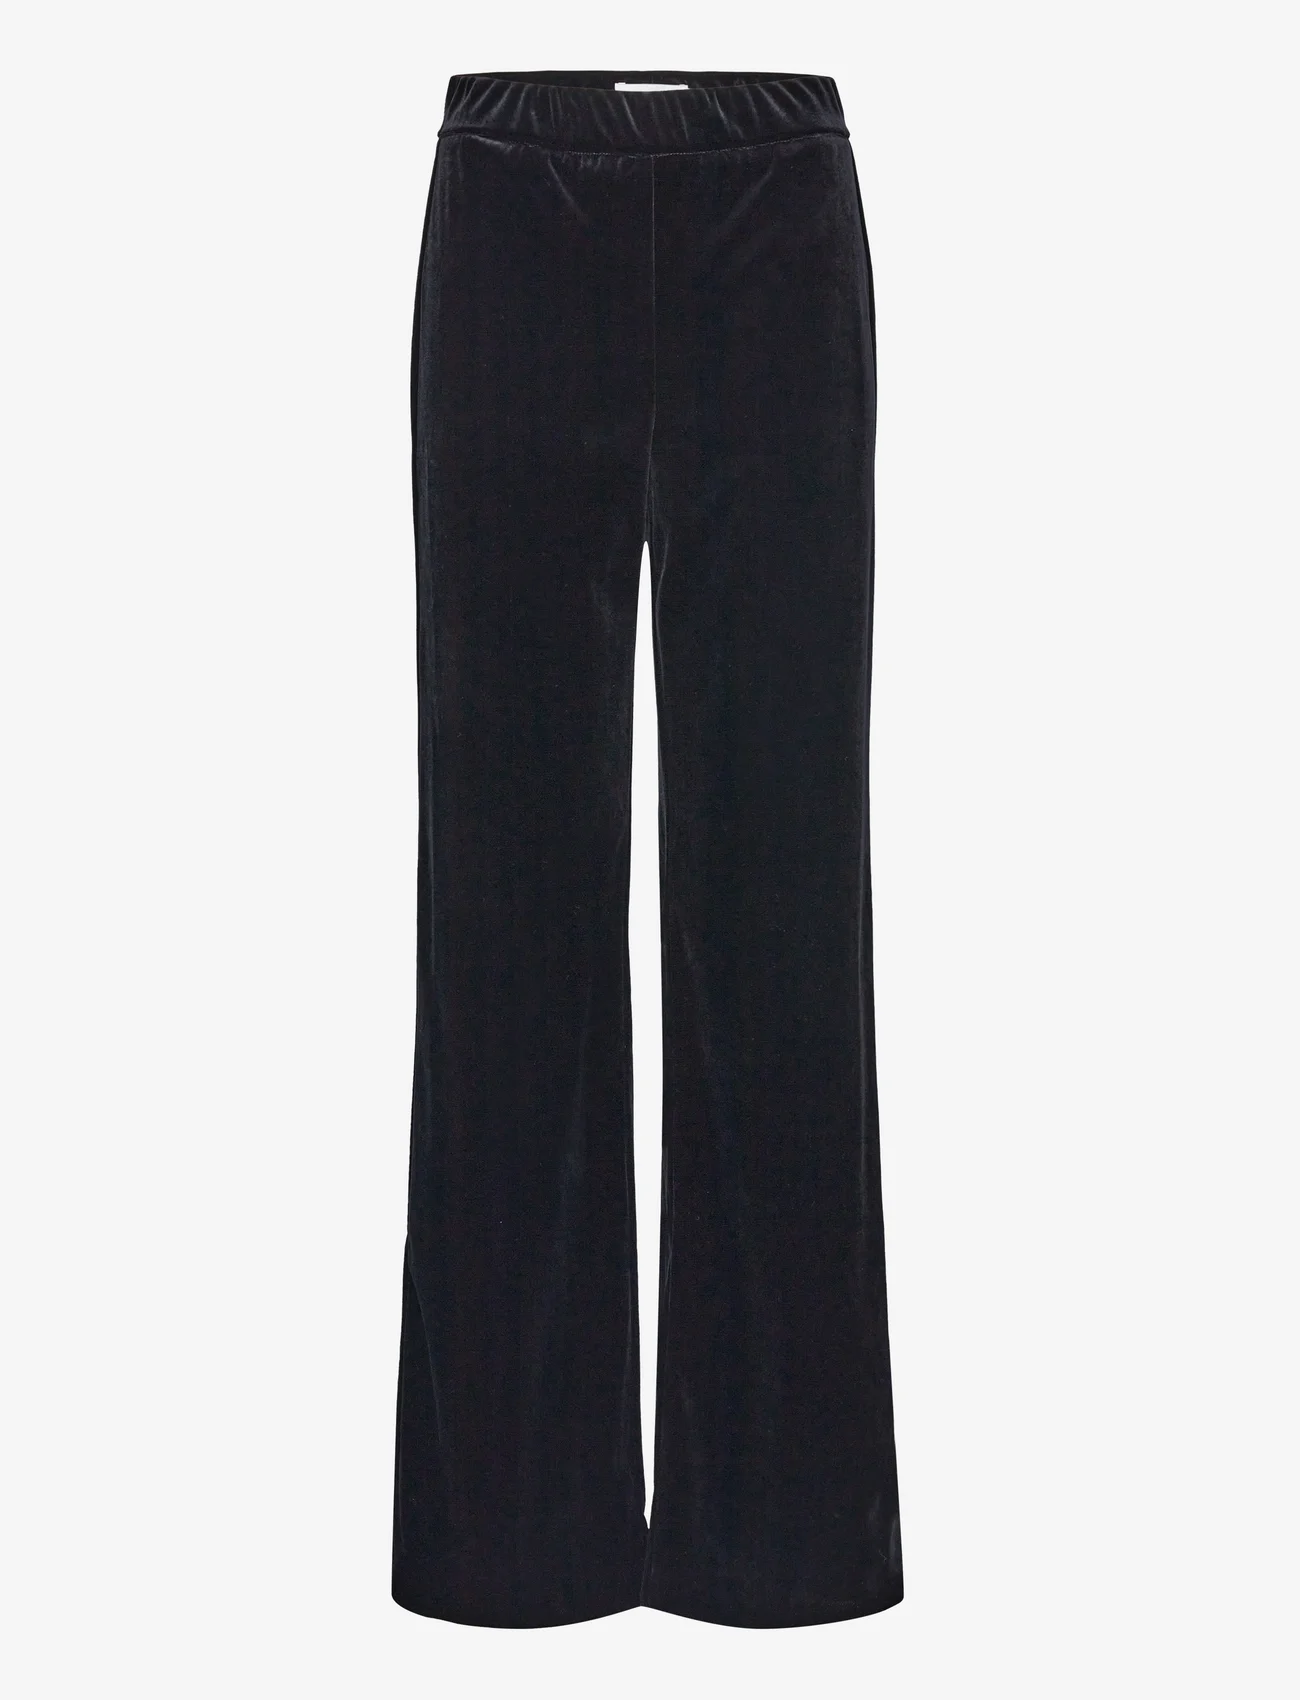 Andiata - Zelie trousers - wijde broeken - black - 0